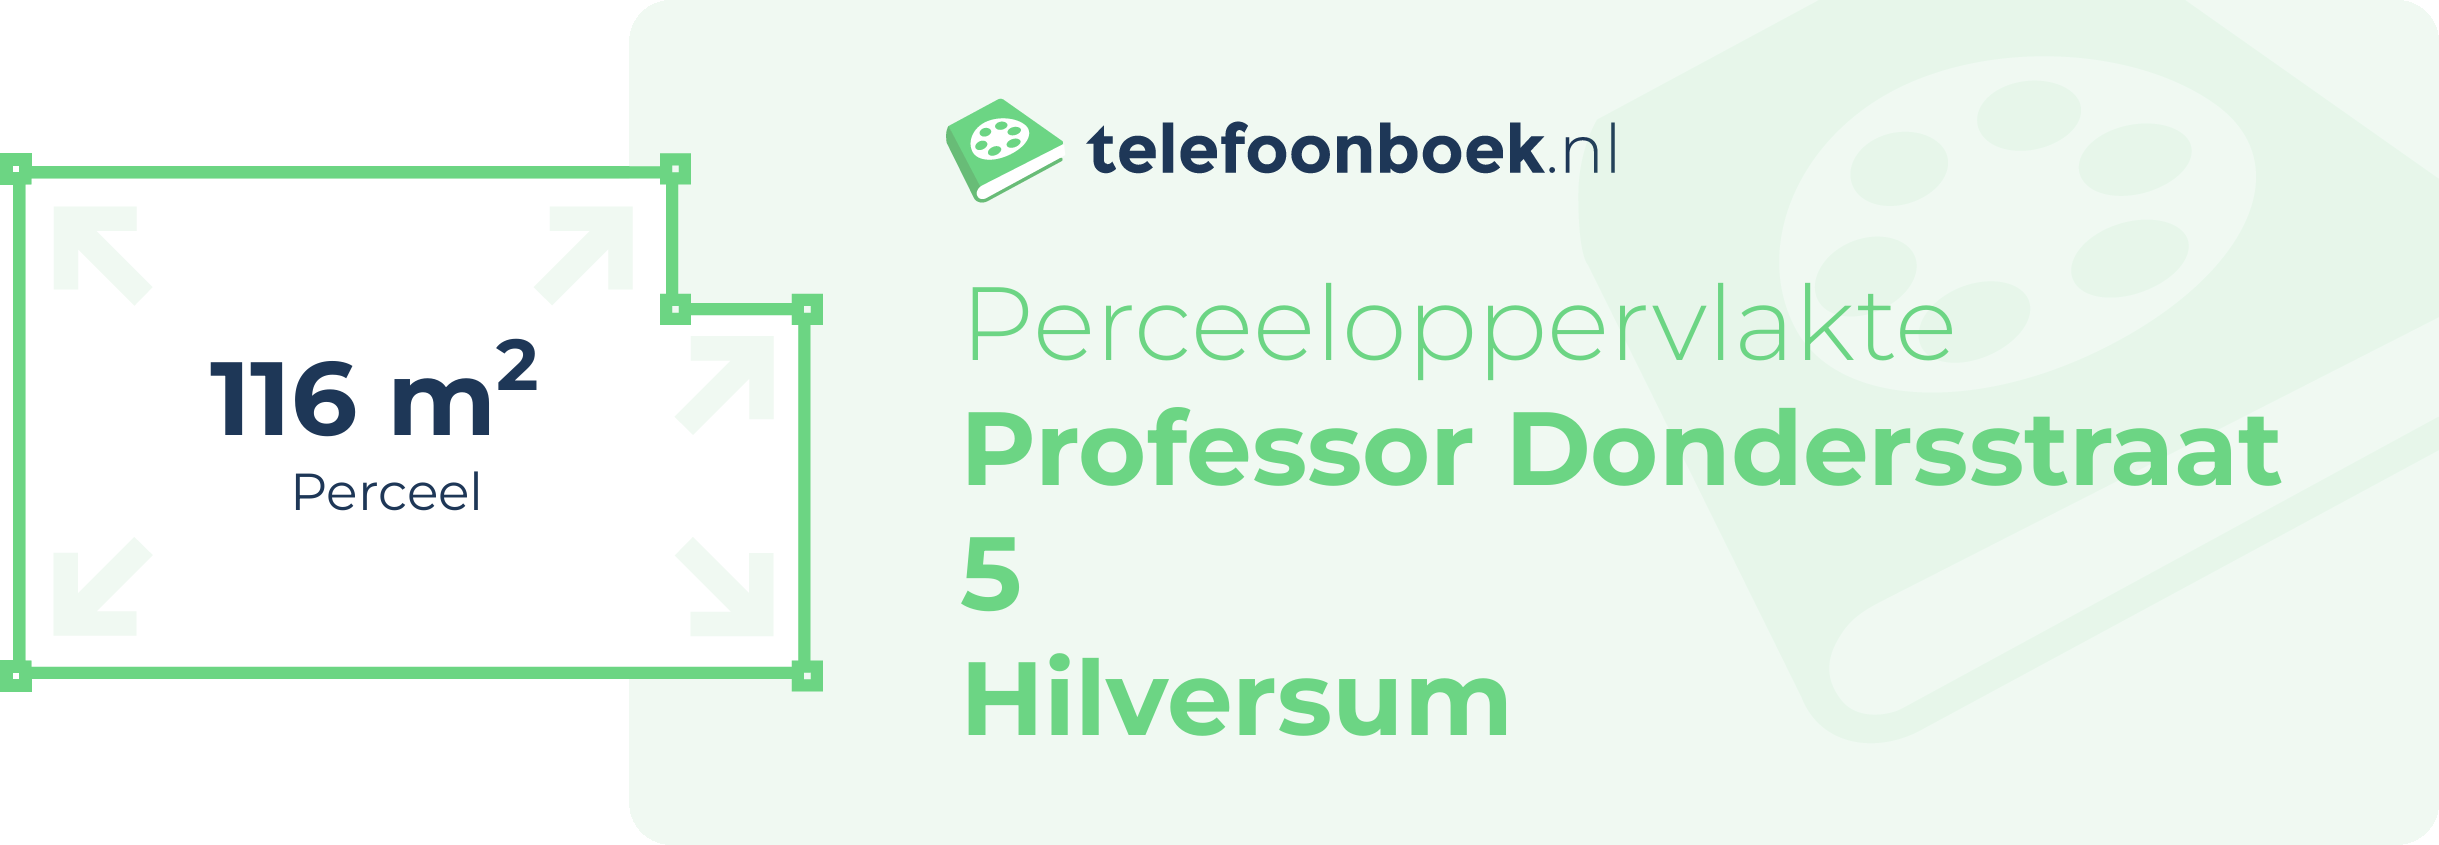 Perceeloppervlakte Professor Dondersstraat 5 Hilversum